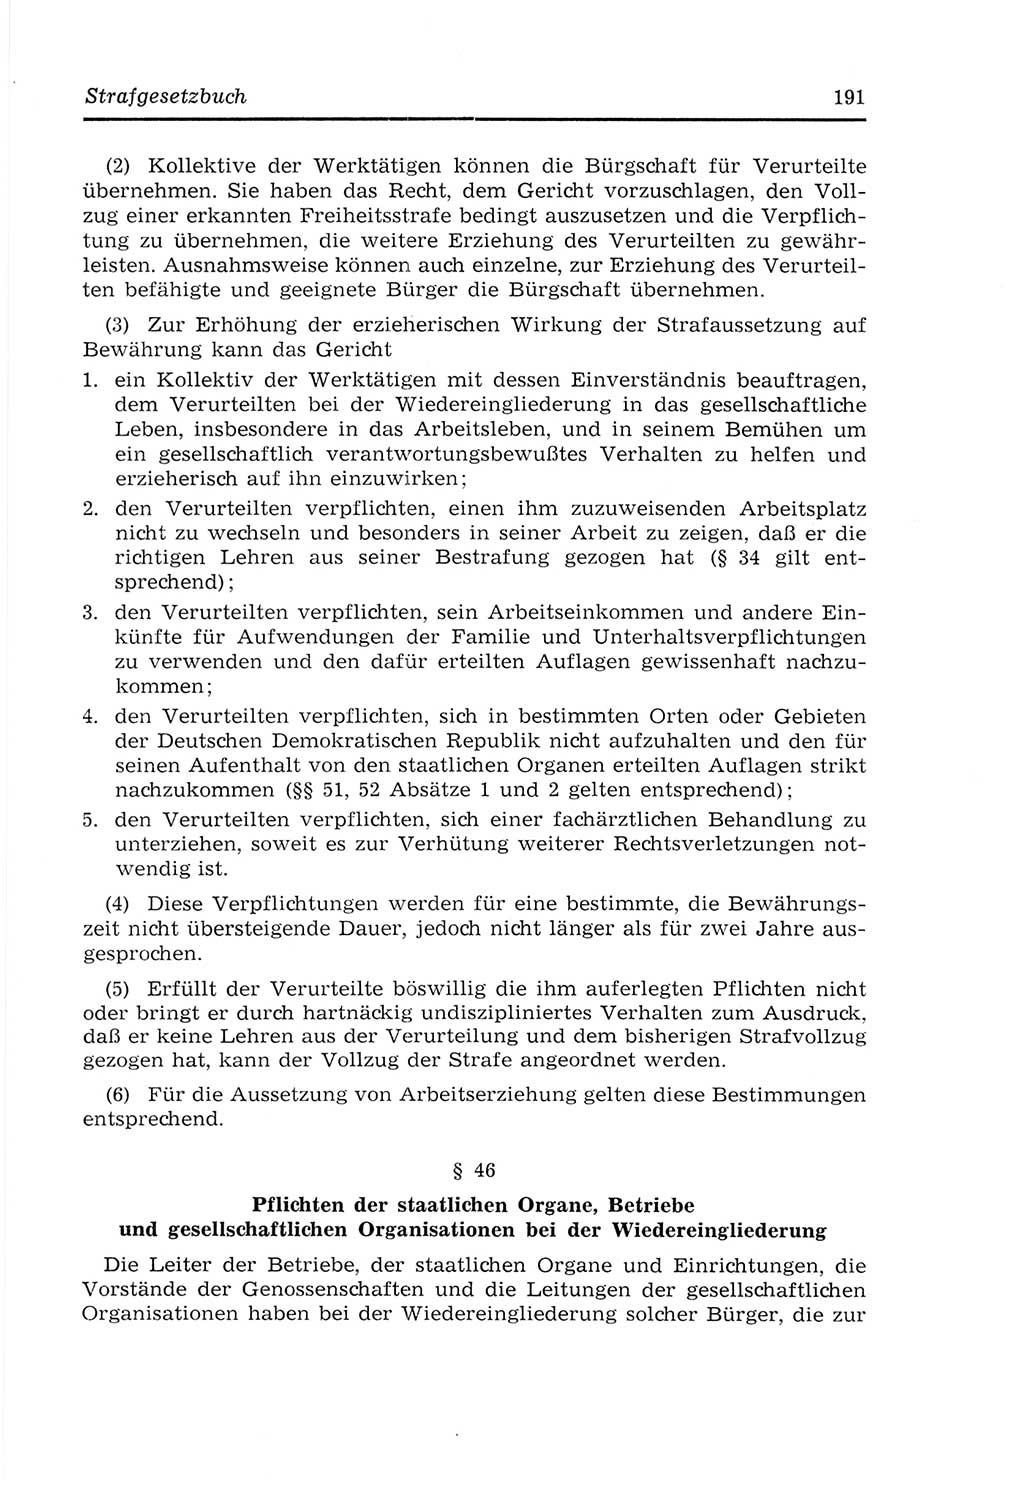 Strafvollzugs- und Wiedereingliederungsgesetz (SVWG) der Deutschen Demokratischen Republik (DDR) 1968, Seite 191 (SVWG DDR 1968, S. 191)